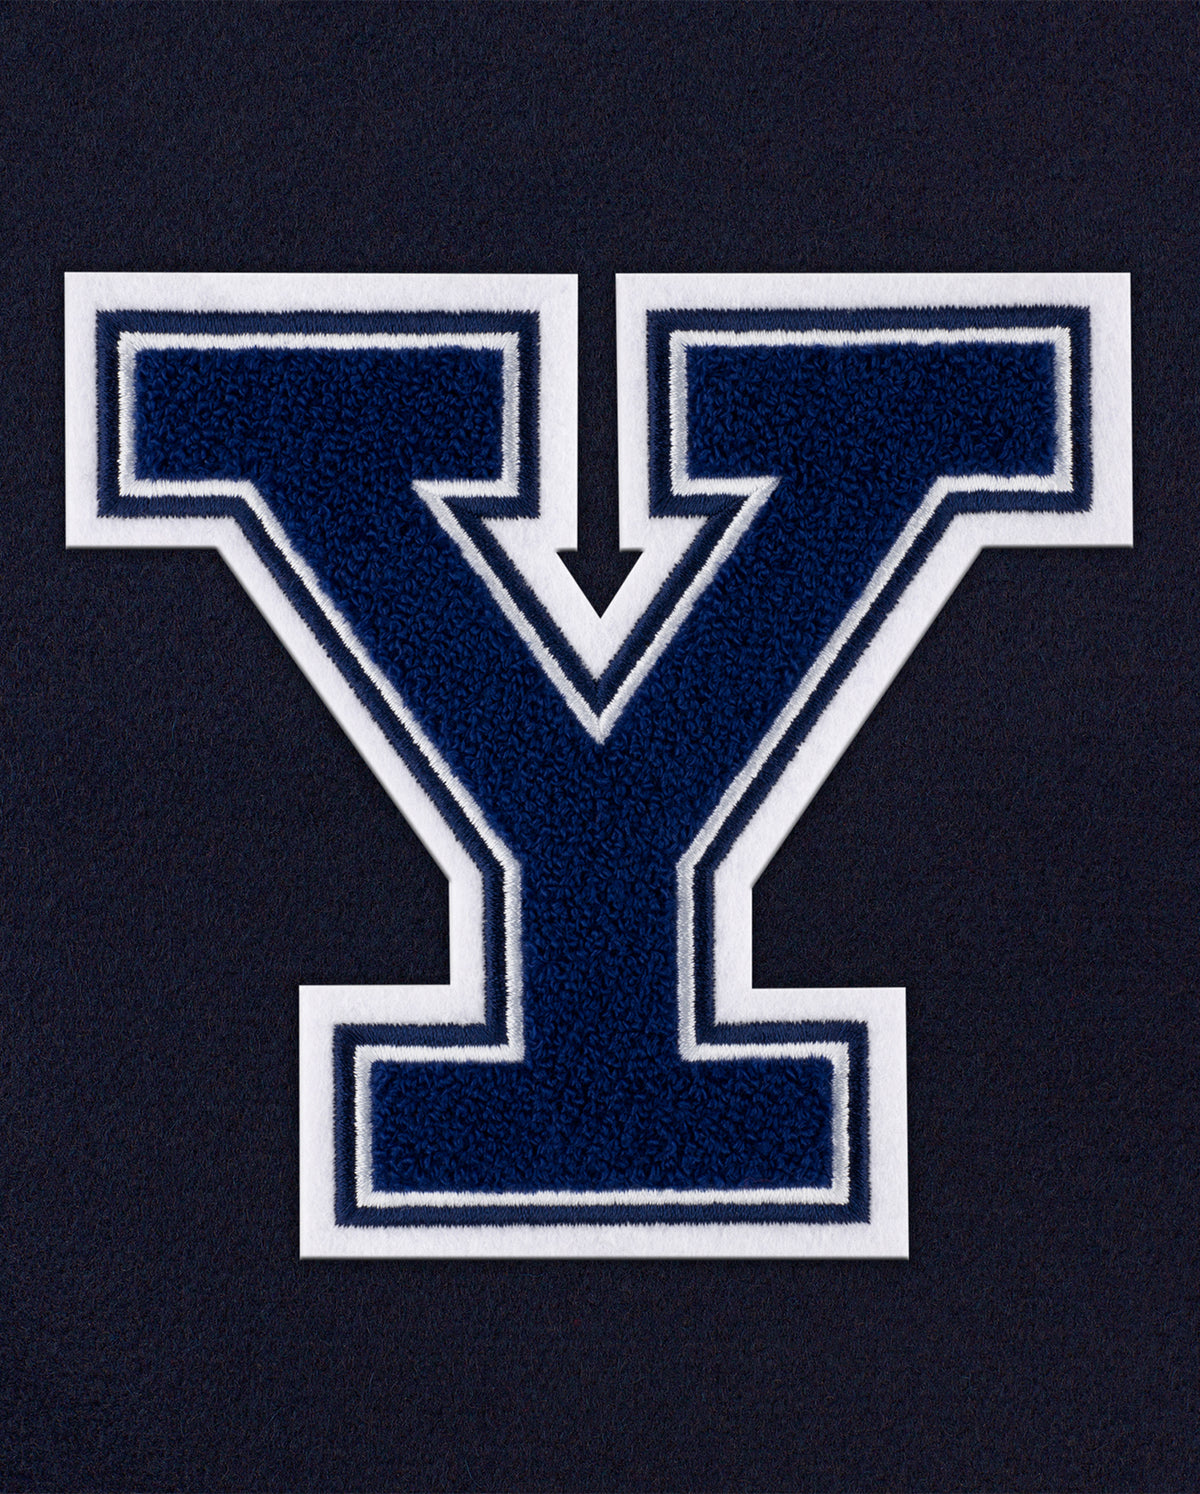 Yale Navy Weekender "Y" Logo